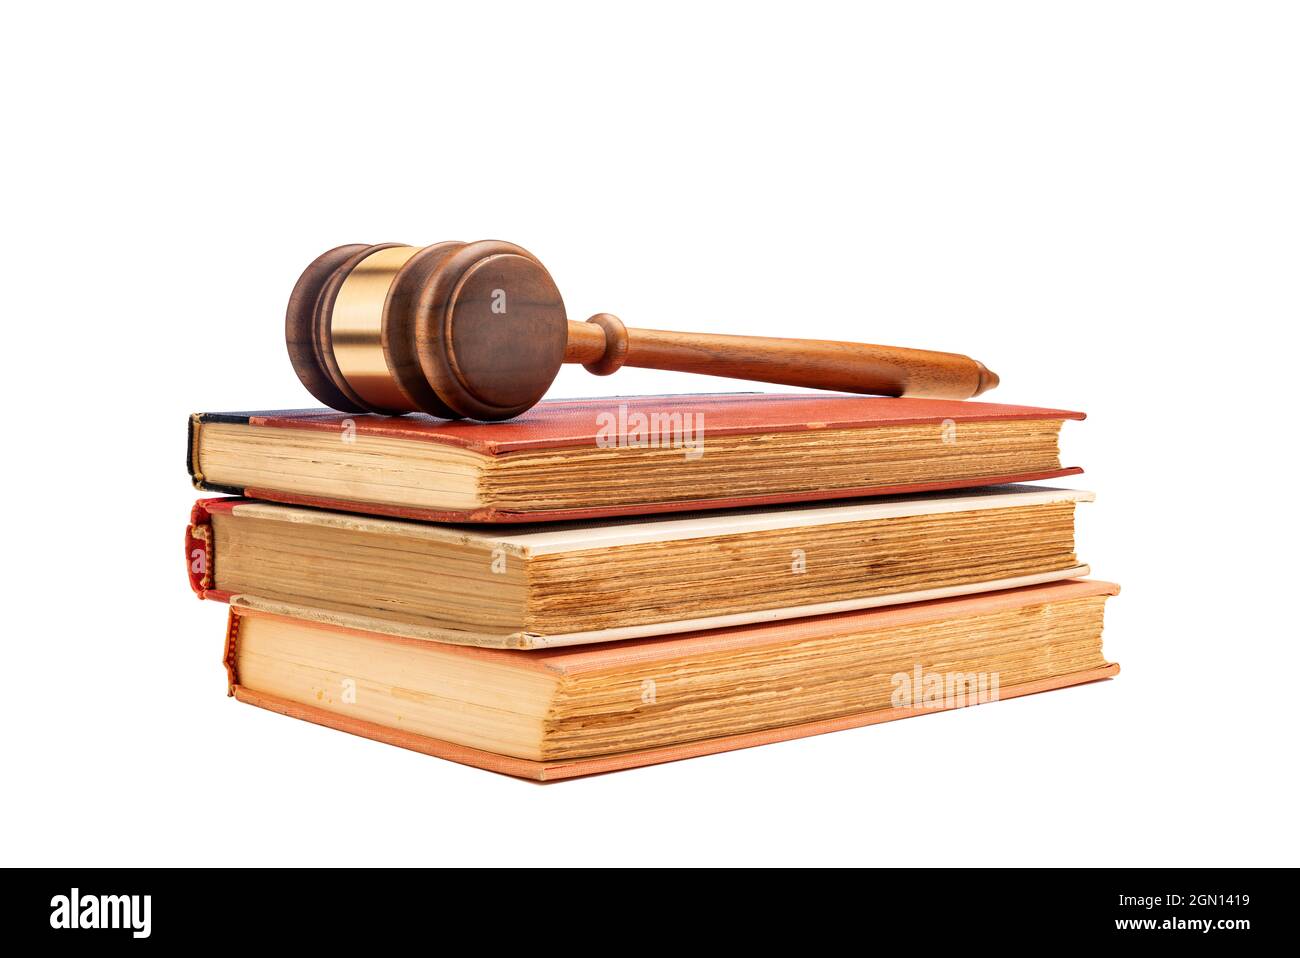 Le gavel d'un juge repose sur trois anciens livres de droit encadrés sur un fond blanc pour faciliter le placement de la copie. Banque D'Images